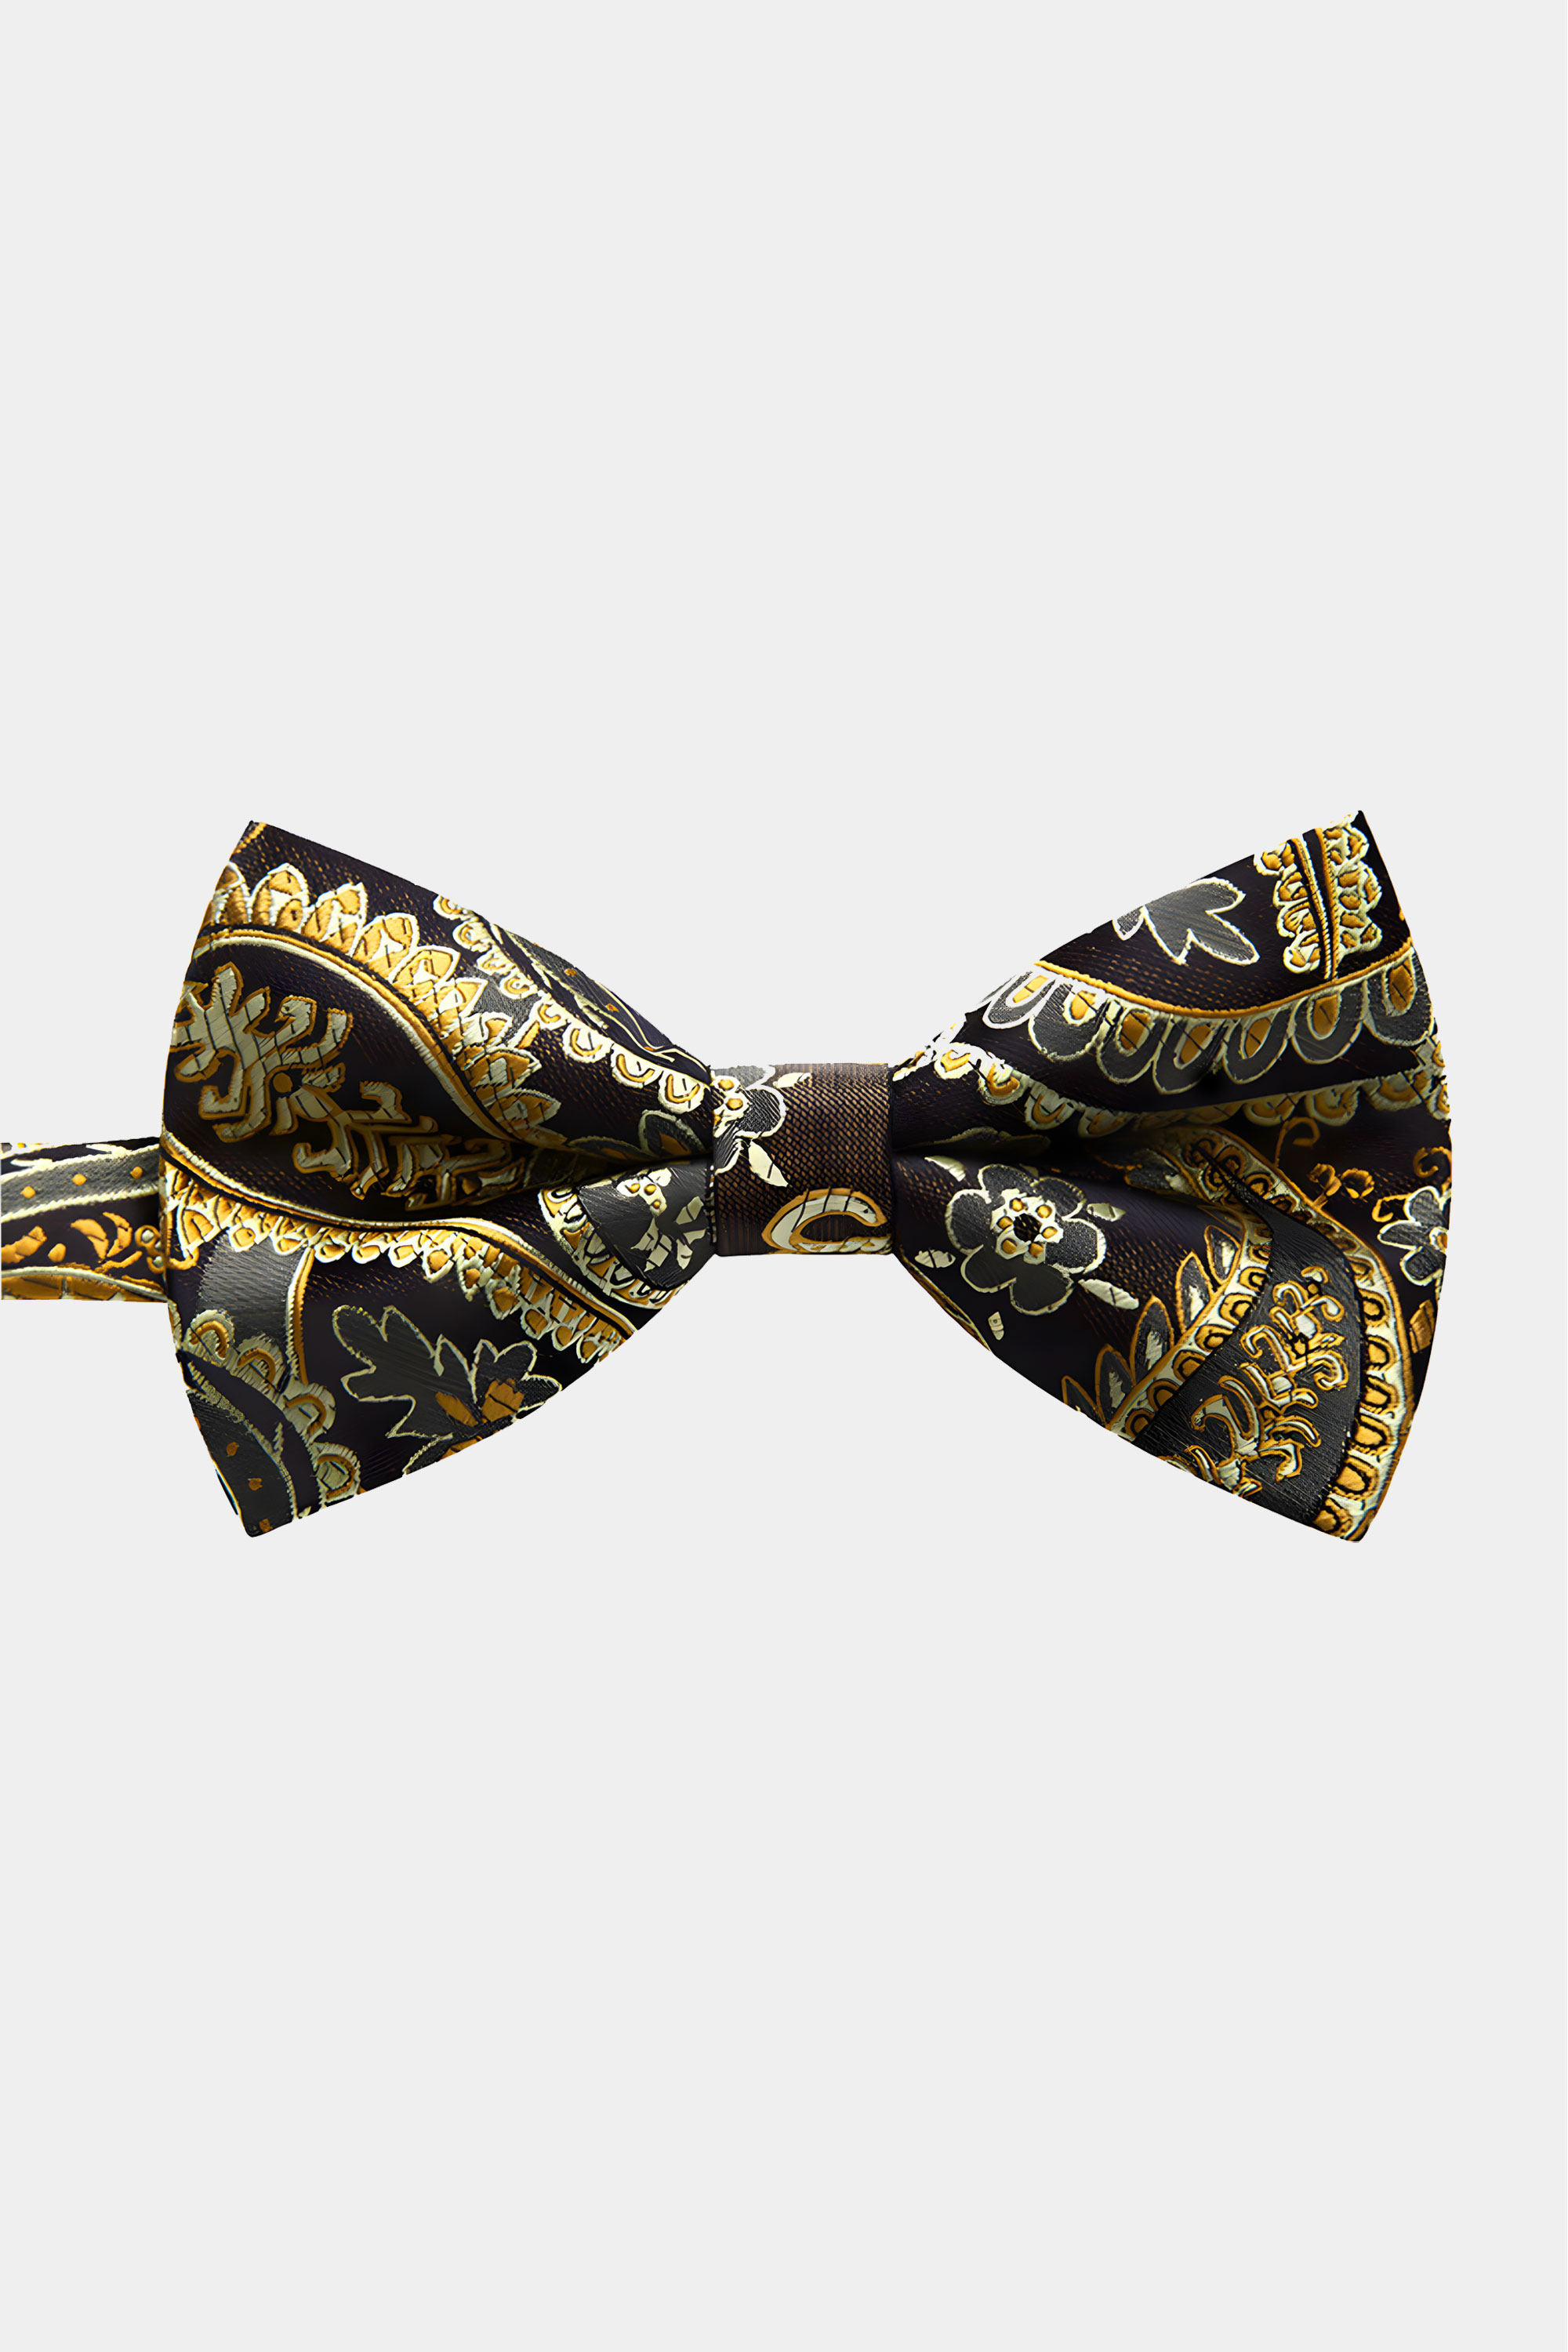 Gold-Paisley-Bow-Tie-from-Gentlemansguru.com